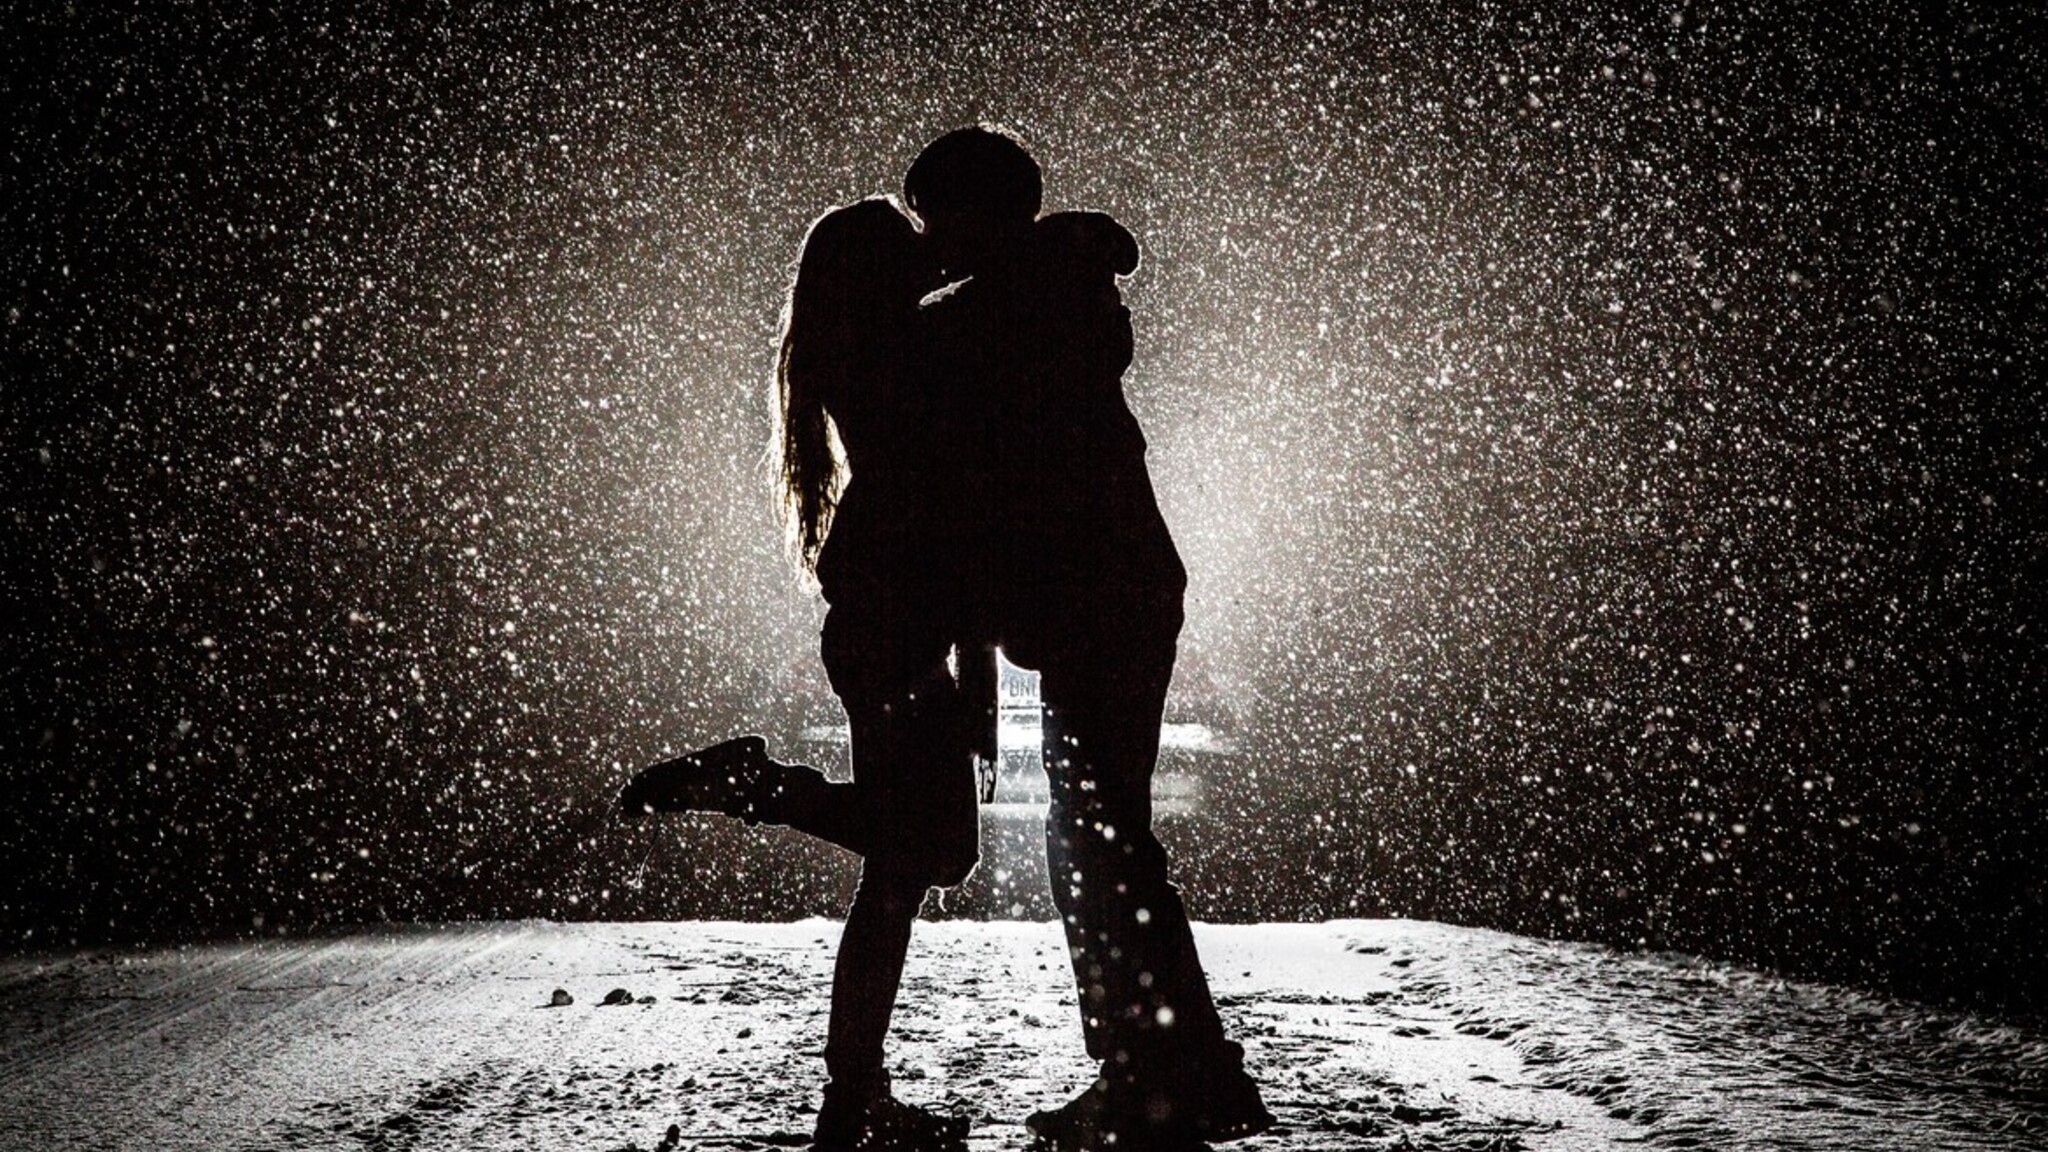 bacio romantico della carta da parati delle coppie,romanza,in piedi,bianco e nero,fotografia,acqua